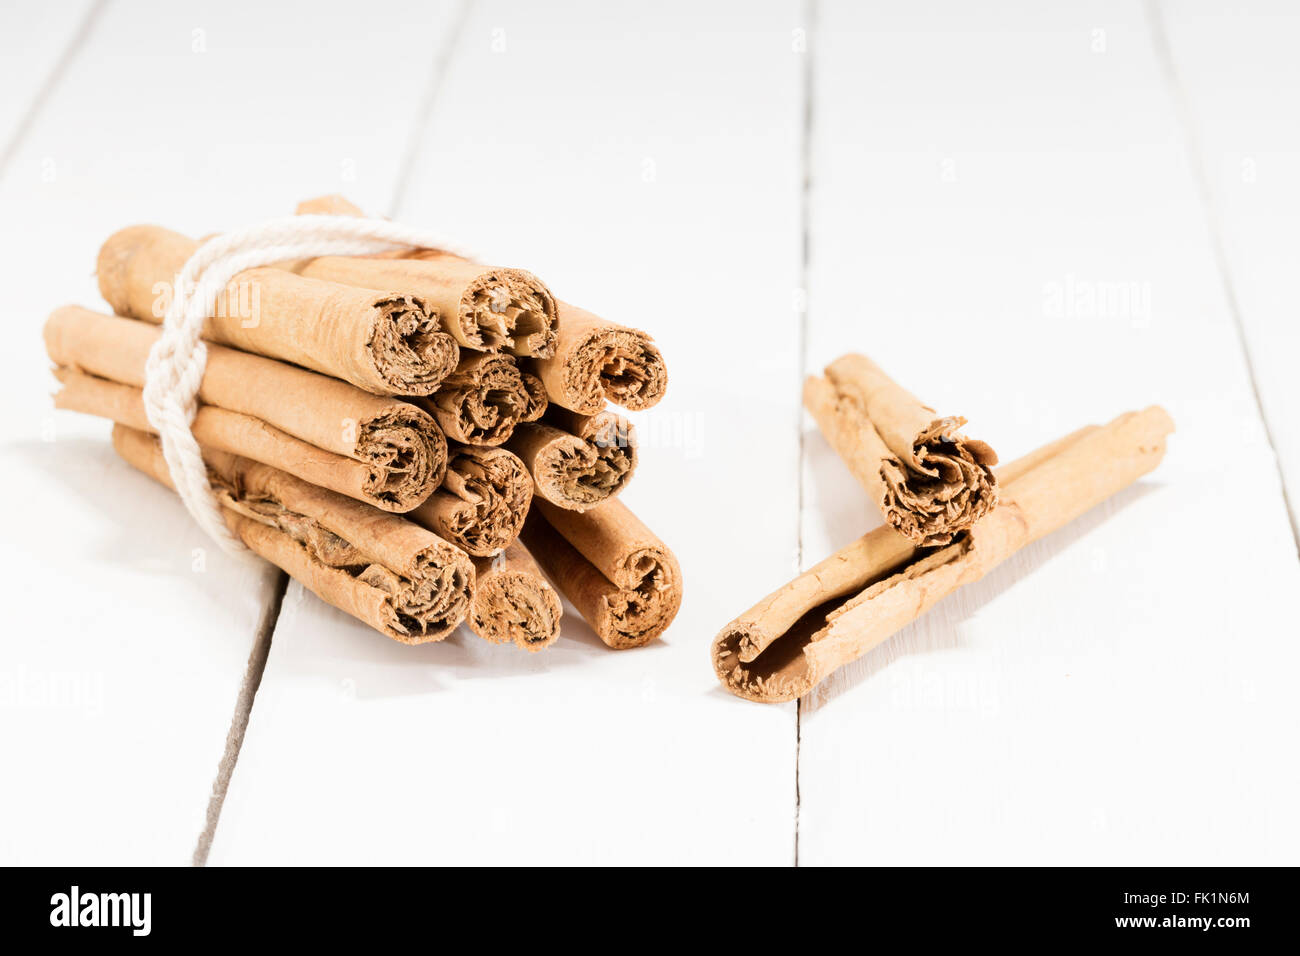 cinnamon sticks on a white kitchen table Stock Photo